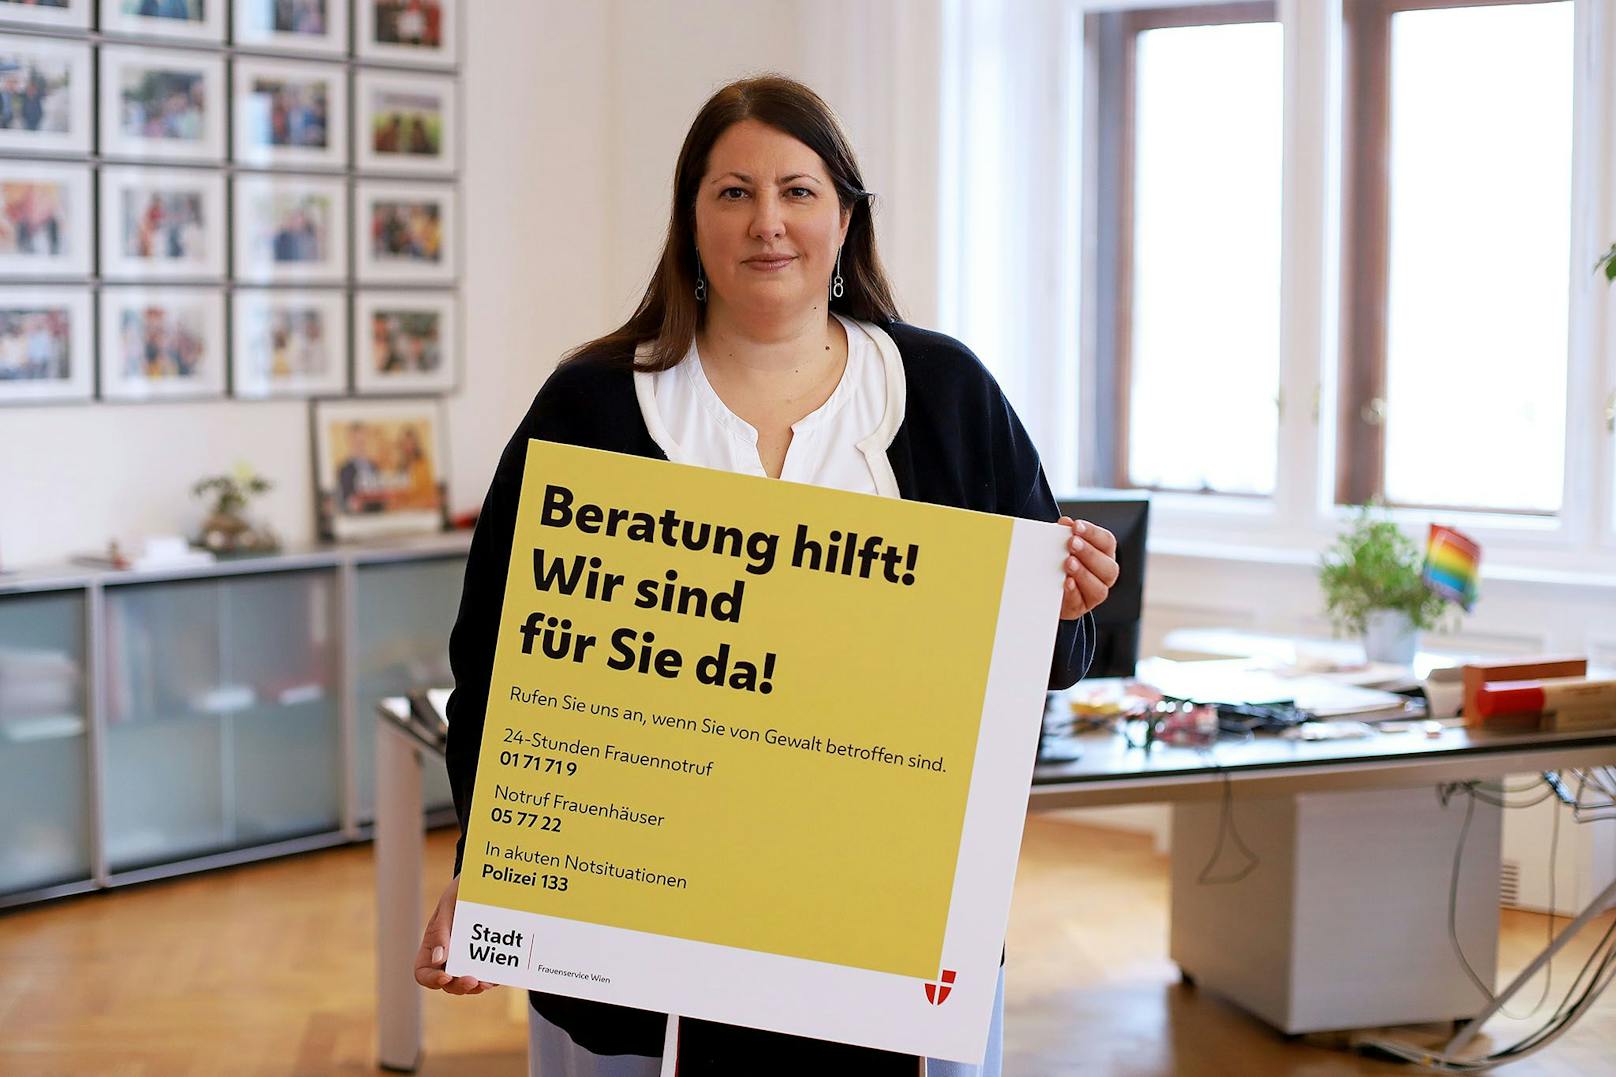 Die Mehrfachbelastung für Frauen steigt immer weiter an", so Vizebürgermeisterin und Frauenstadträtin Kathrin Gaal (SPÖ). Daher bietet die Stadt nun Beratungsvideos an, die Frauen in der Coronakrise unterstützen und stärken sollen.r setzt